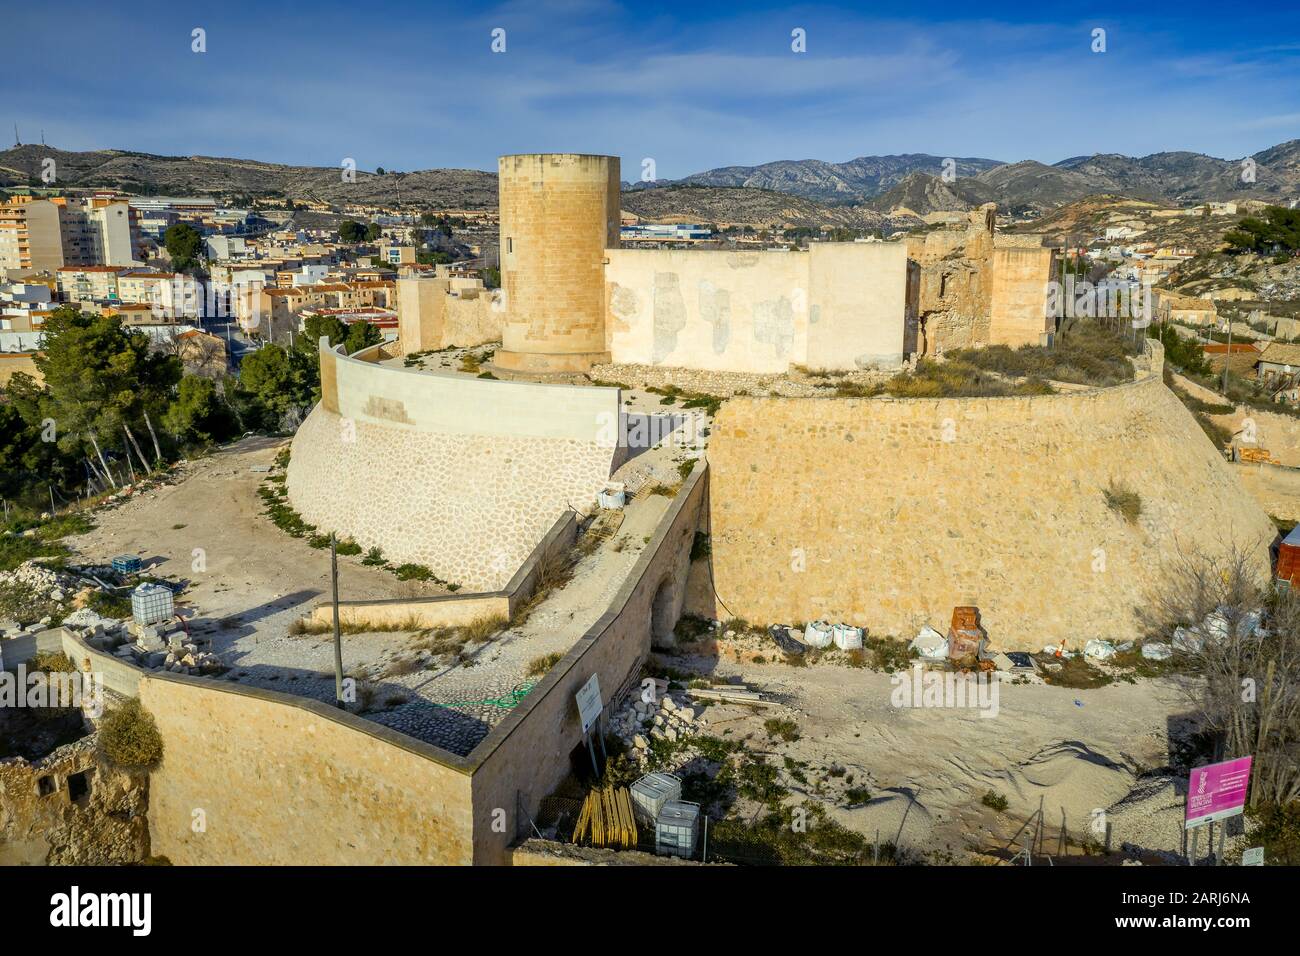 Luftpanorama über der mittelalterlichen Burg Elda mit teilweise restaurierten Mauern, Türmen und Tor aus weißem Kalkstein in Spanien Stockfoto